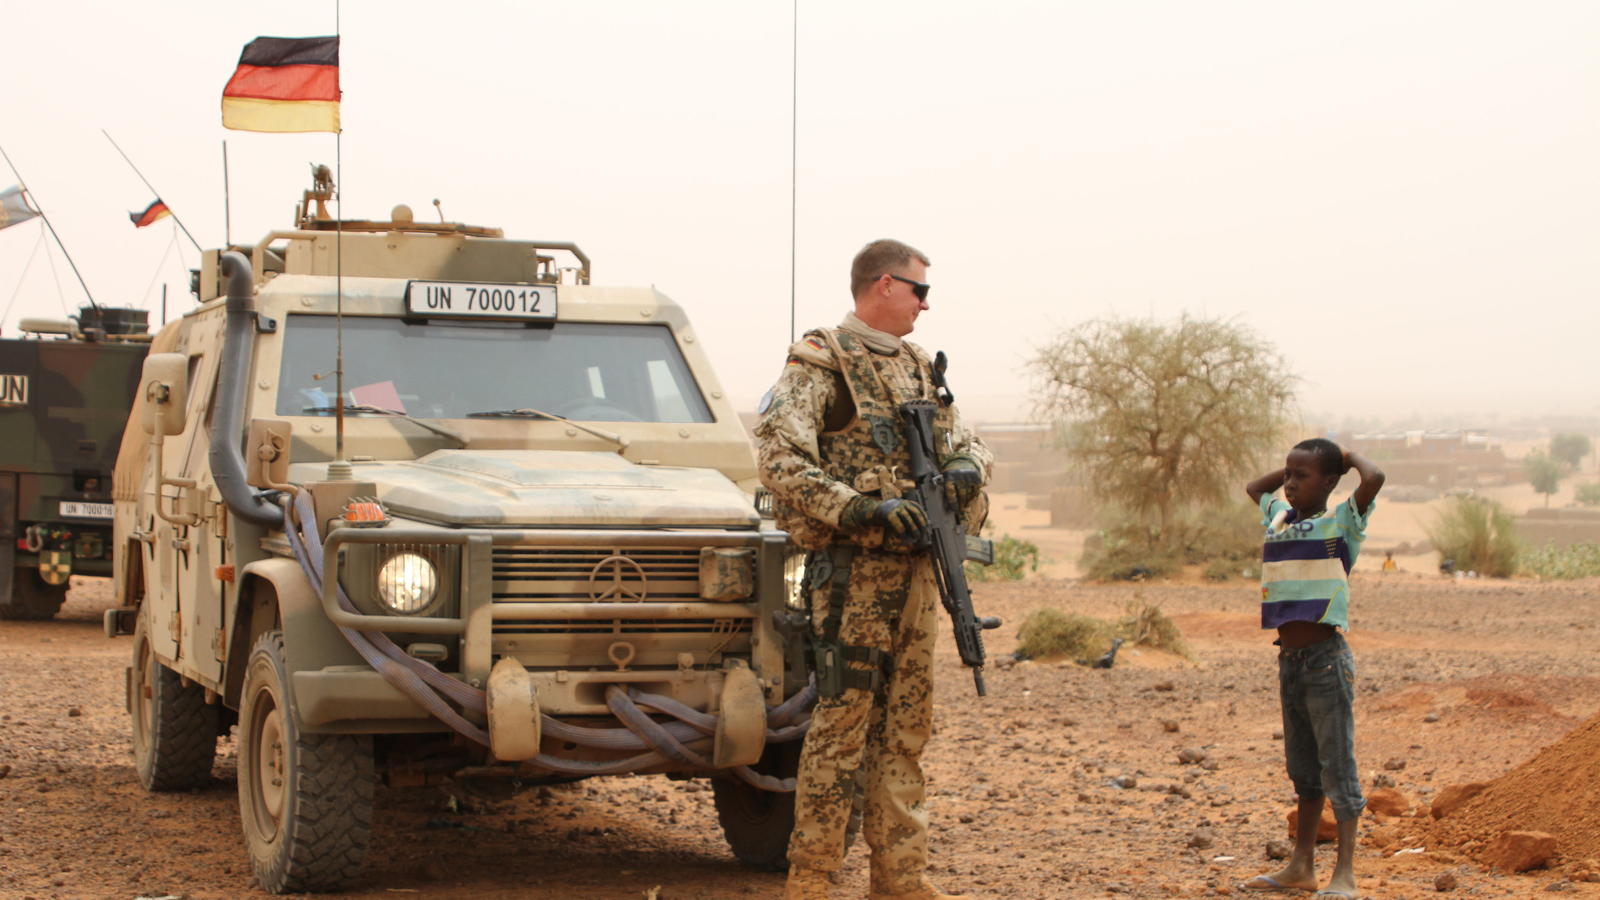 ARCHIV - Ein deutscher Blauhelmsoldat unterhält sich während einer Patrouille am 07.05.2016 in der Stadt Gao im Norden Malis mit einem Kind.    (zu dpa "Bericht: Extremes Klima in Mali legt Bundeswehr-Fahrzeuge lahm" vom 19.04.2017) Foto: Kristin Palitza/dpa +++(c) dpa - Bildfunk+++